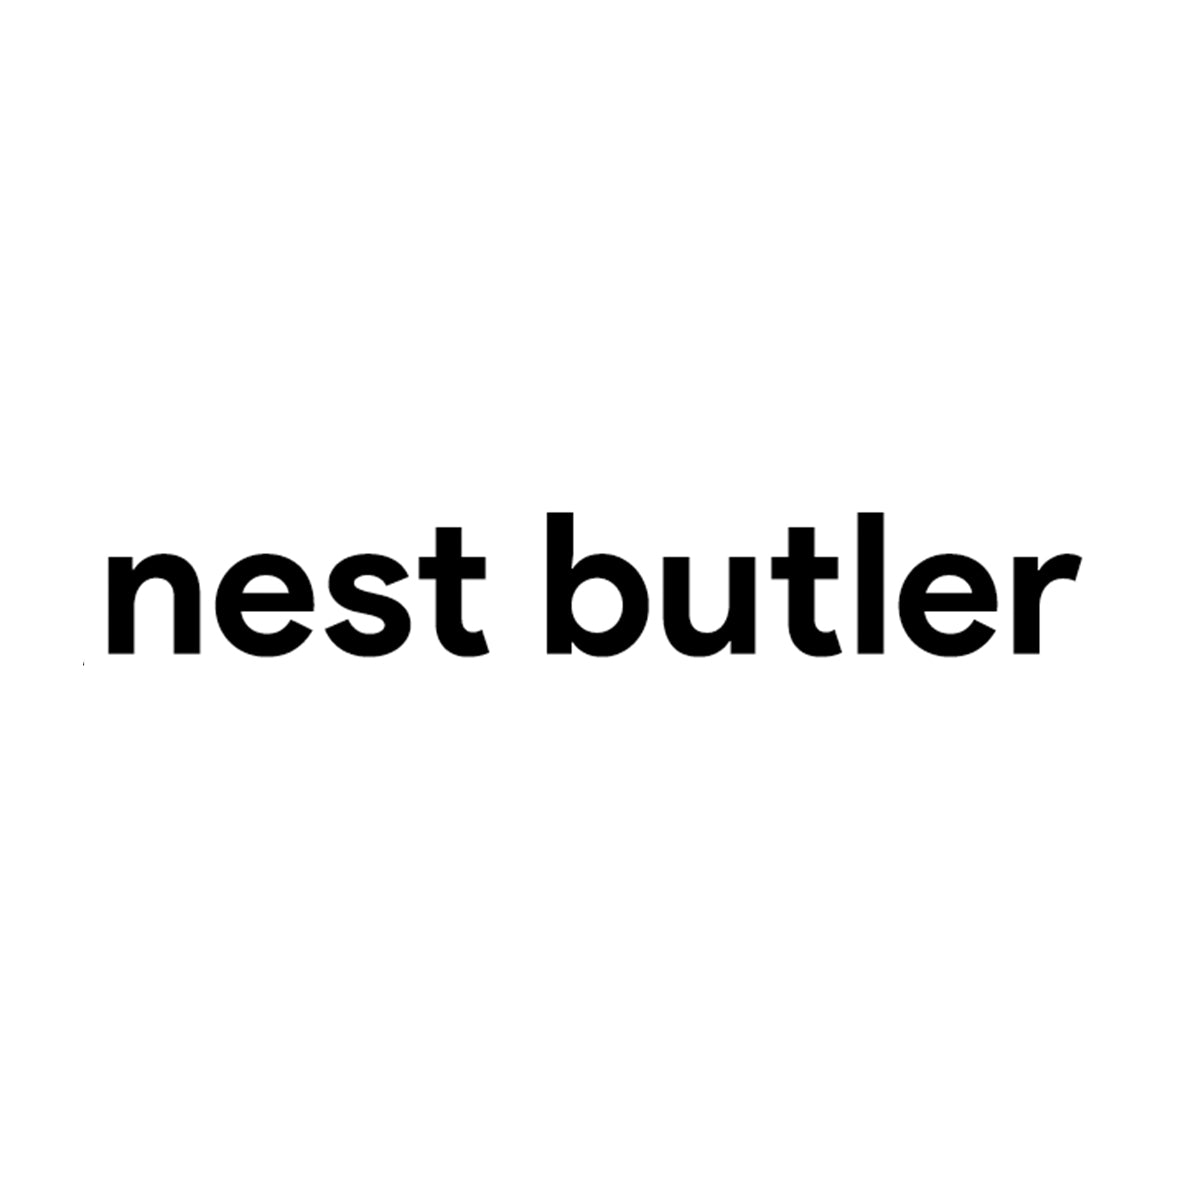 Nest butler